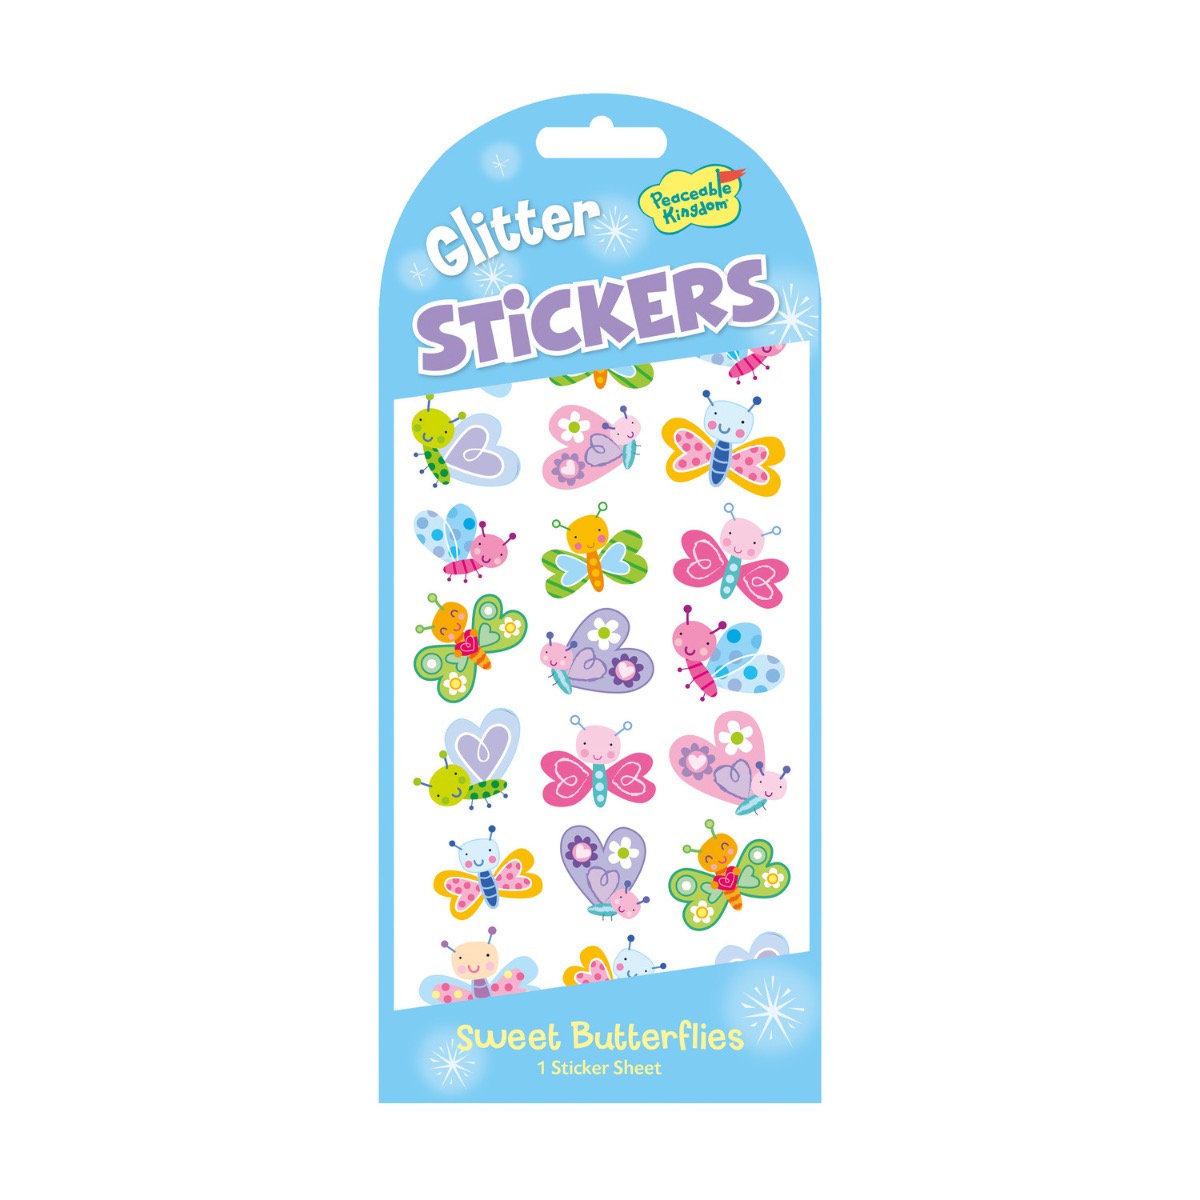 Peaceable Kingdom Sweet Butterflies Glitter Stickers